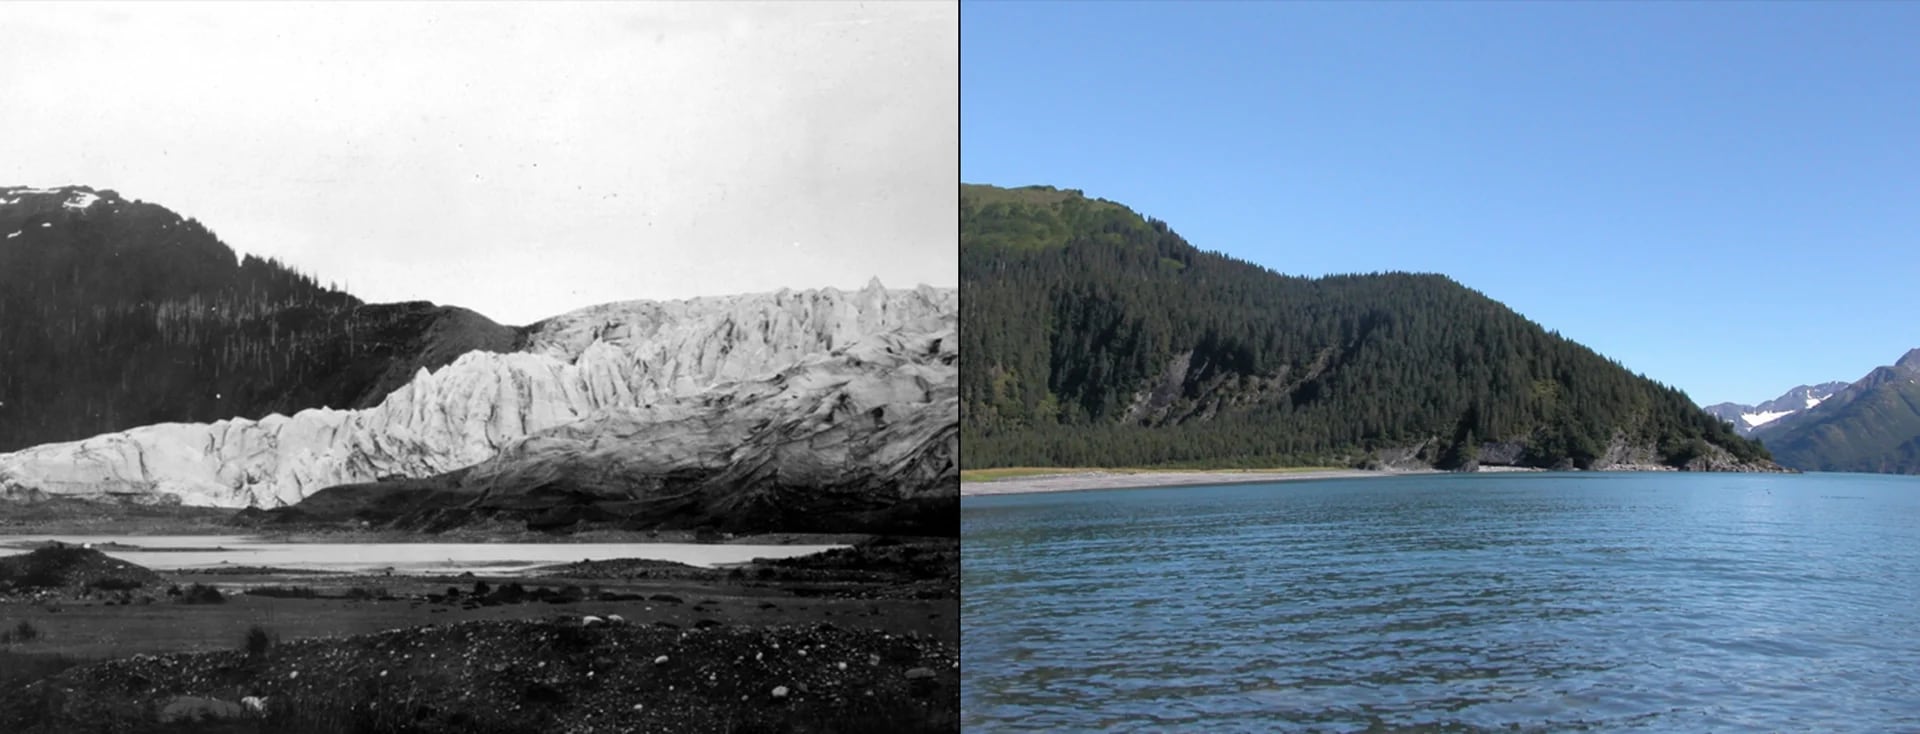 Derretimiento del Glaciar McCarty, Alaska: del 30 de julio de 1909 al 11 de agosto de 2004